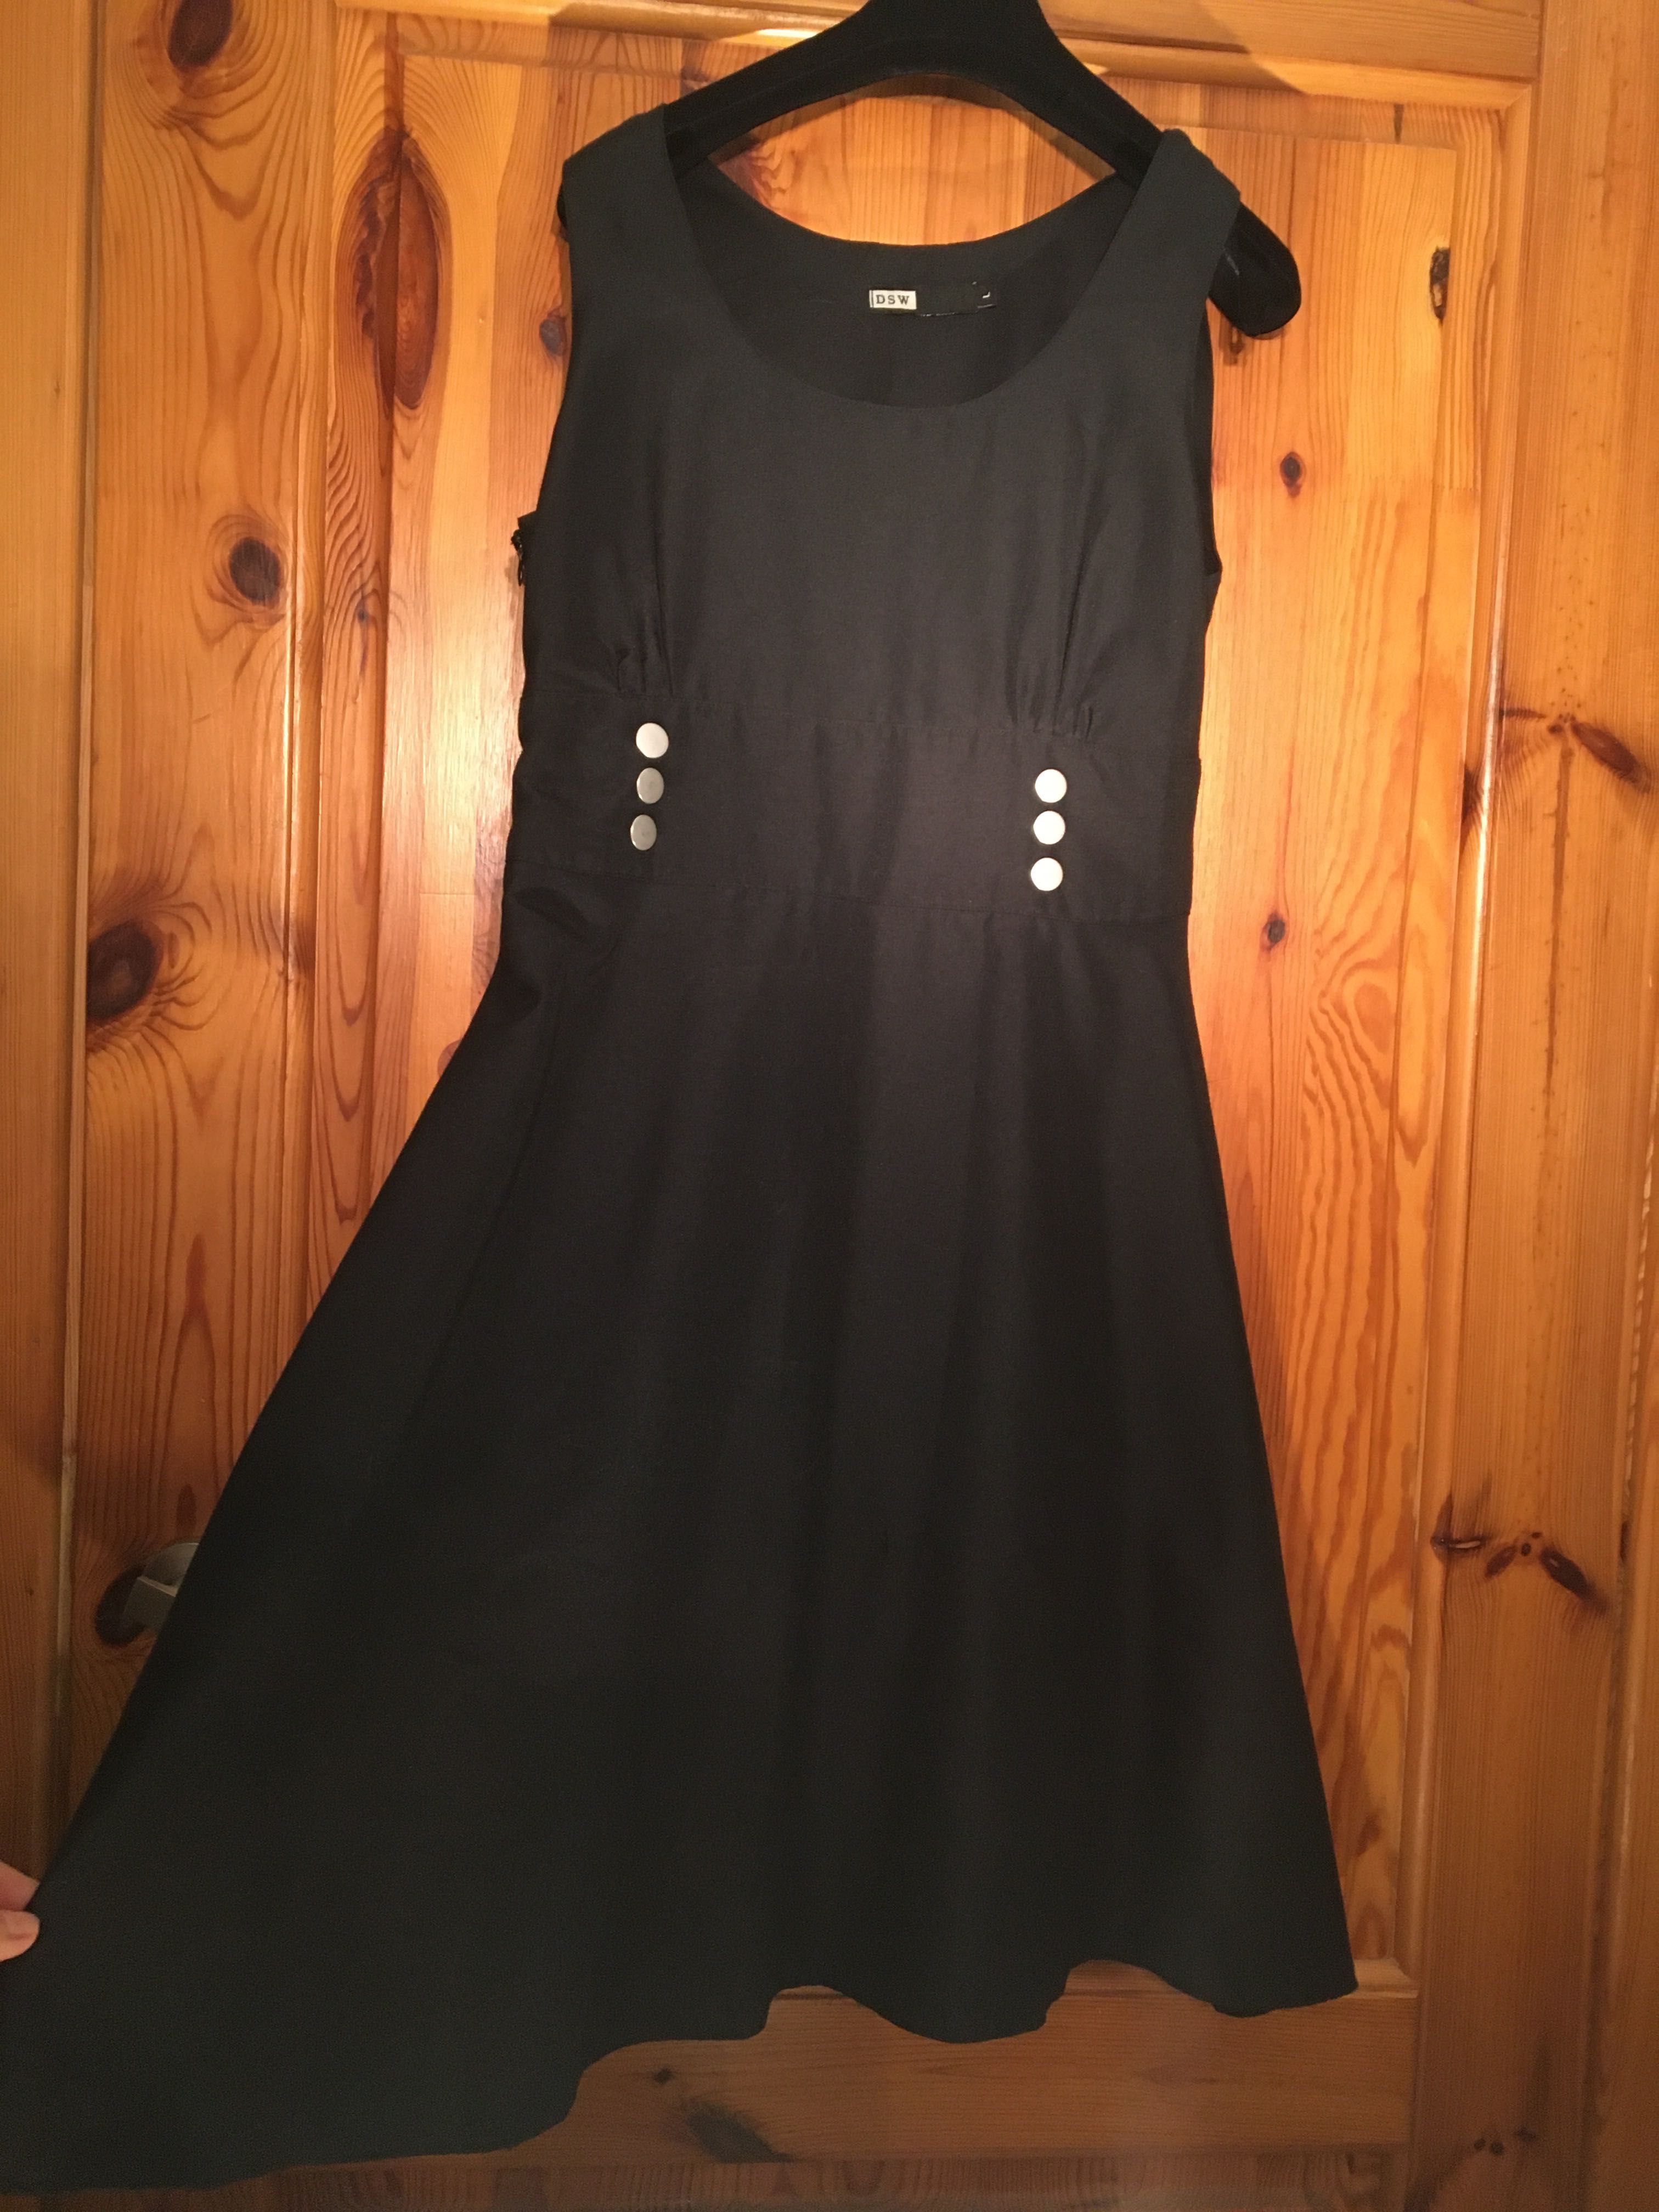 Sukienka granatowa rozkloszowana, marka DSW, rozmiar L/40